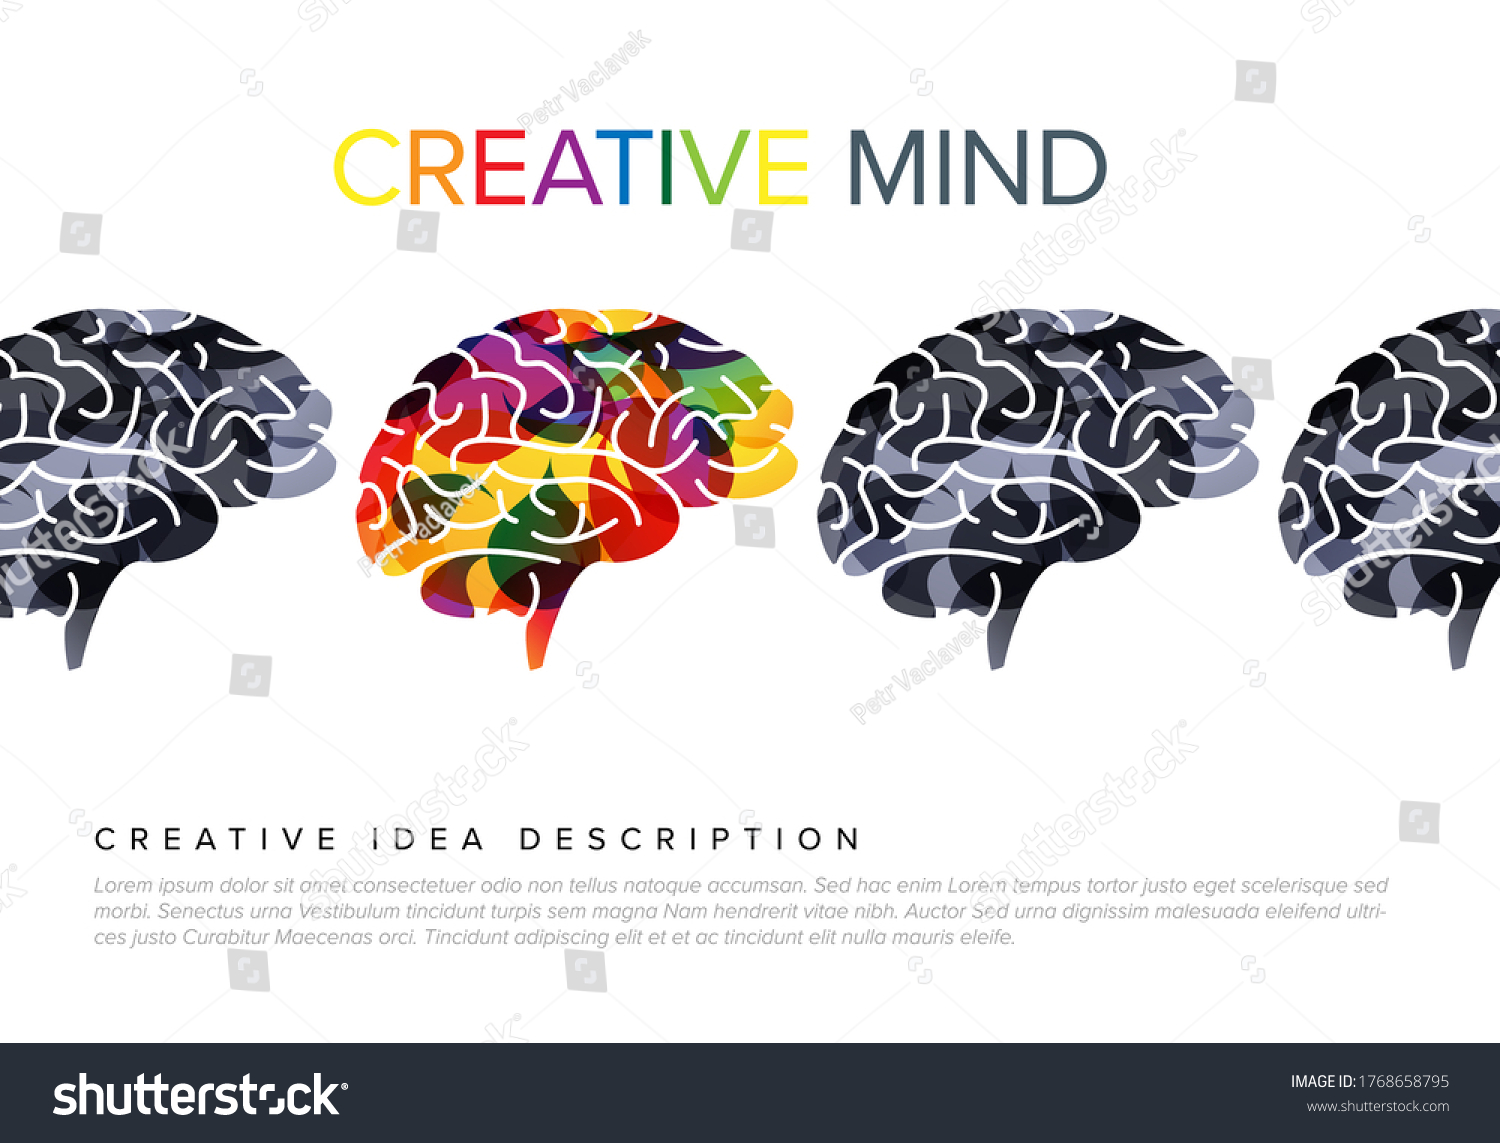 人間の脳観のベクター画像 脳の平面図 側面図 断面図 医療デザイン 教育 ロゴデザインの人間の脳のイラスト 色の変更が簡単 ベクター画像人間の脳 ロゴ脳 のベクター画像素材 ロイヤリティフリー